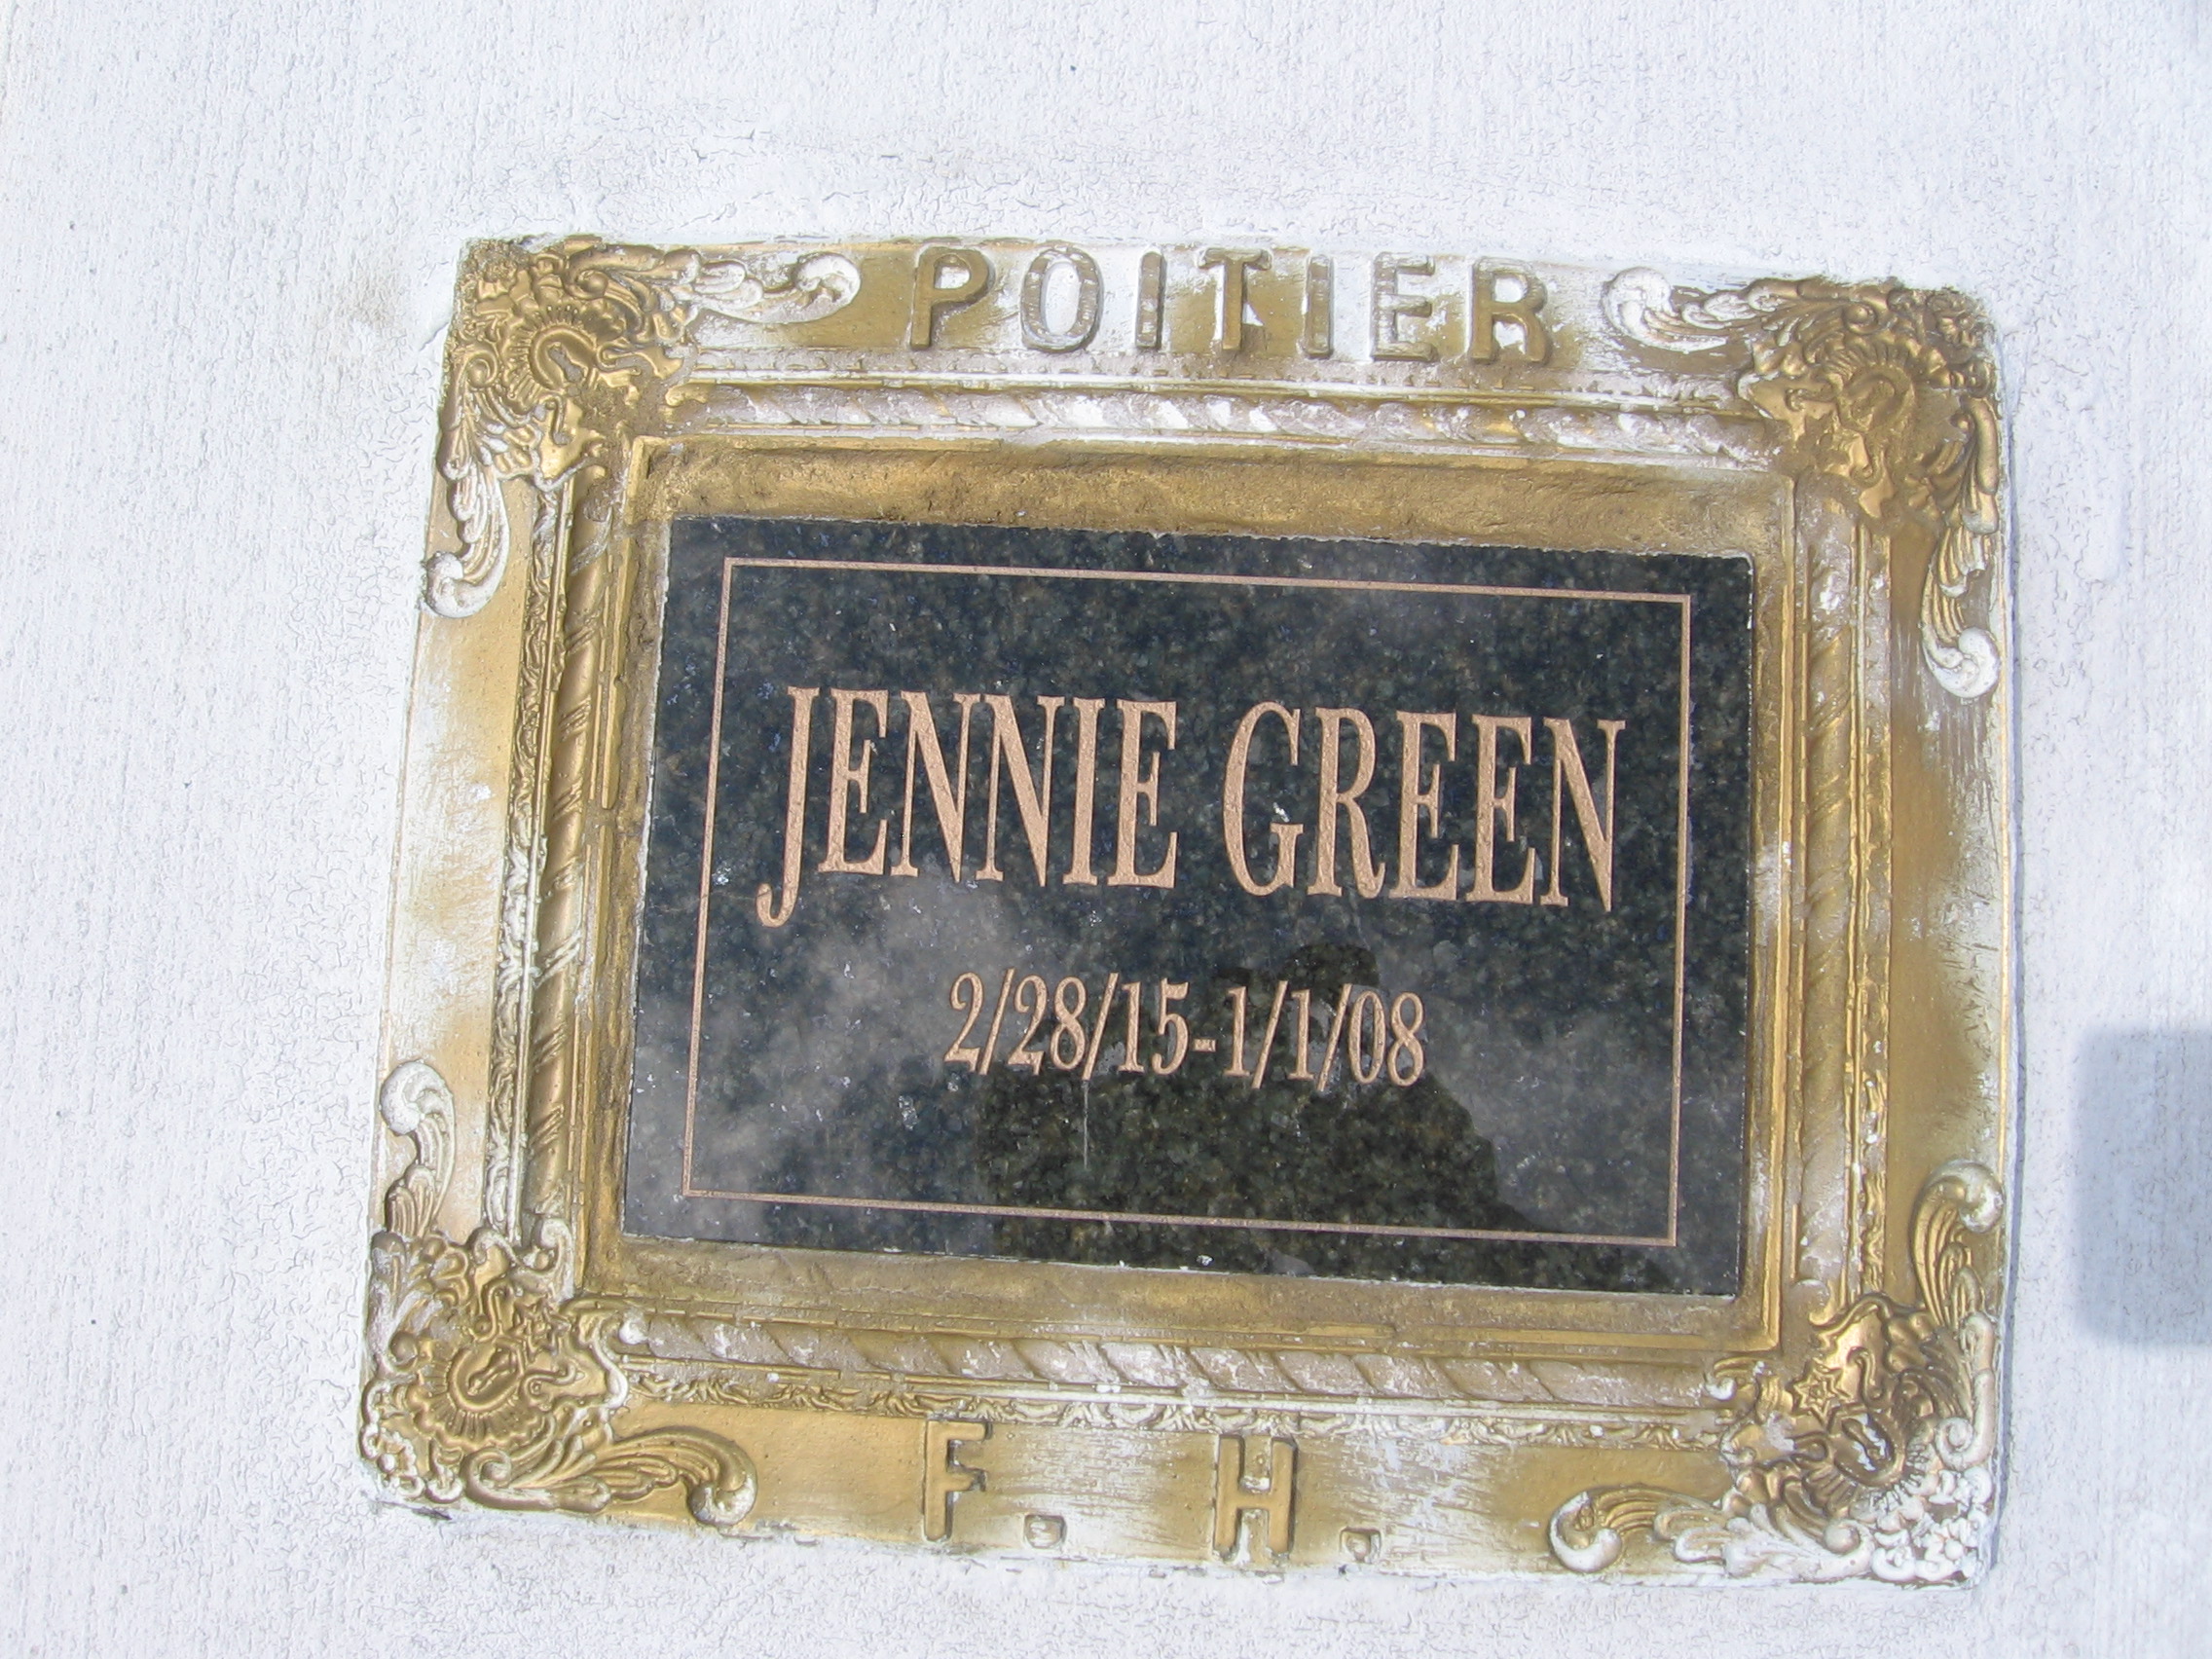 Jennie Green